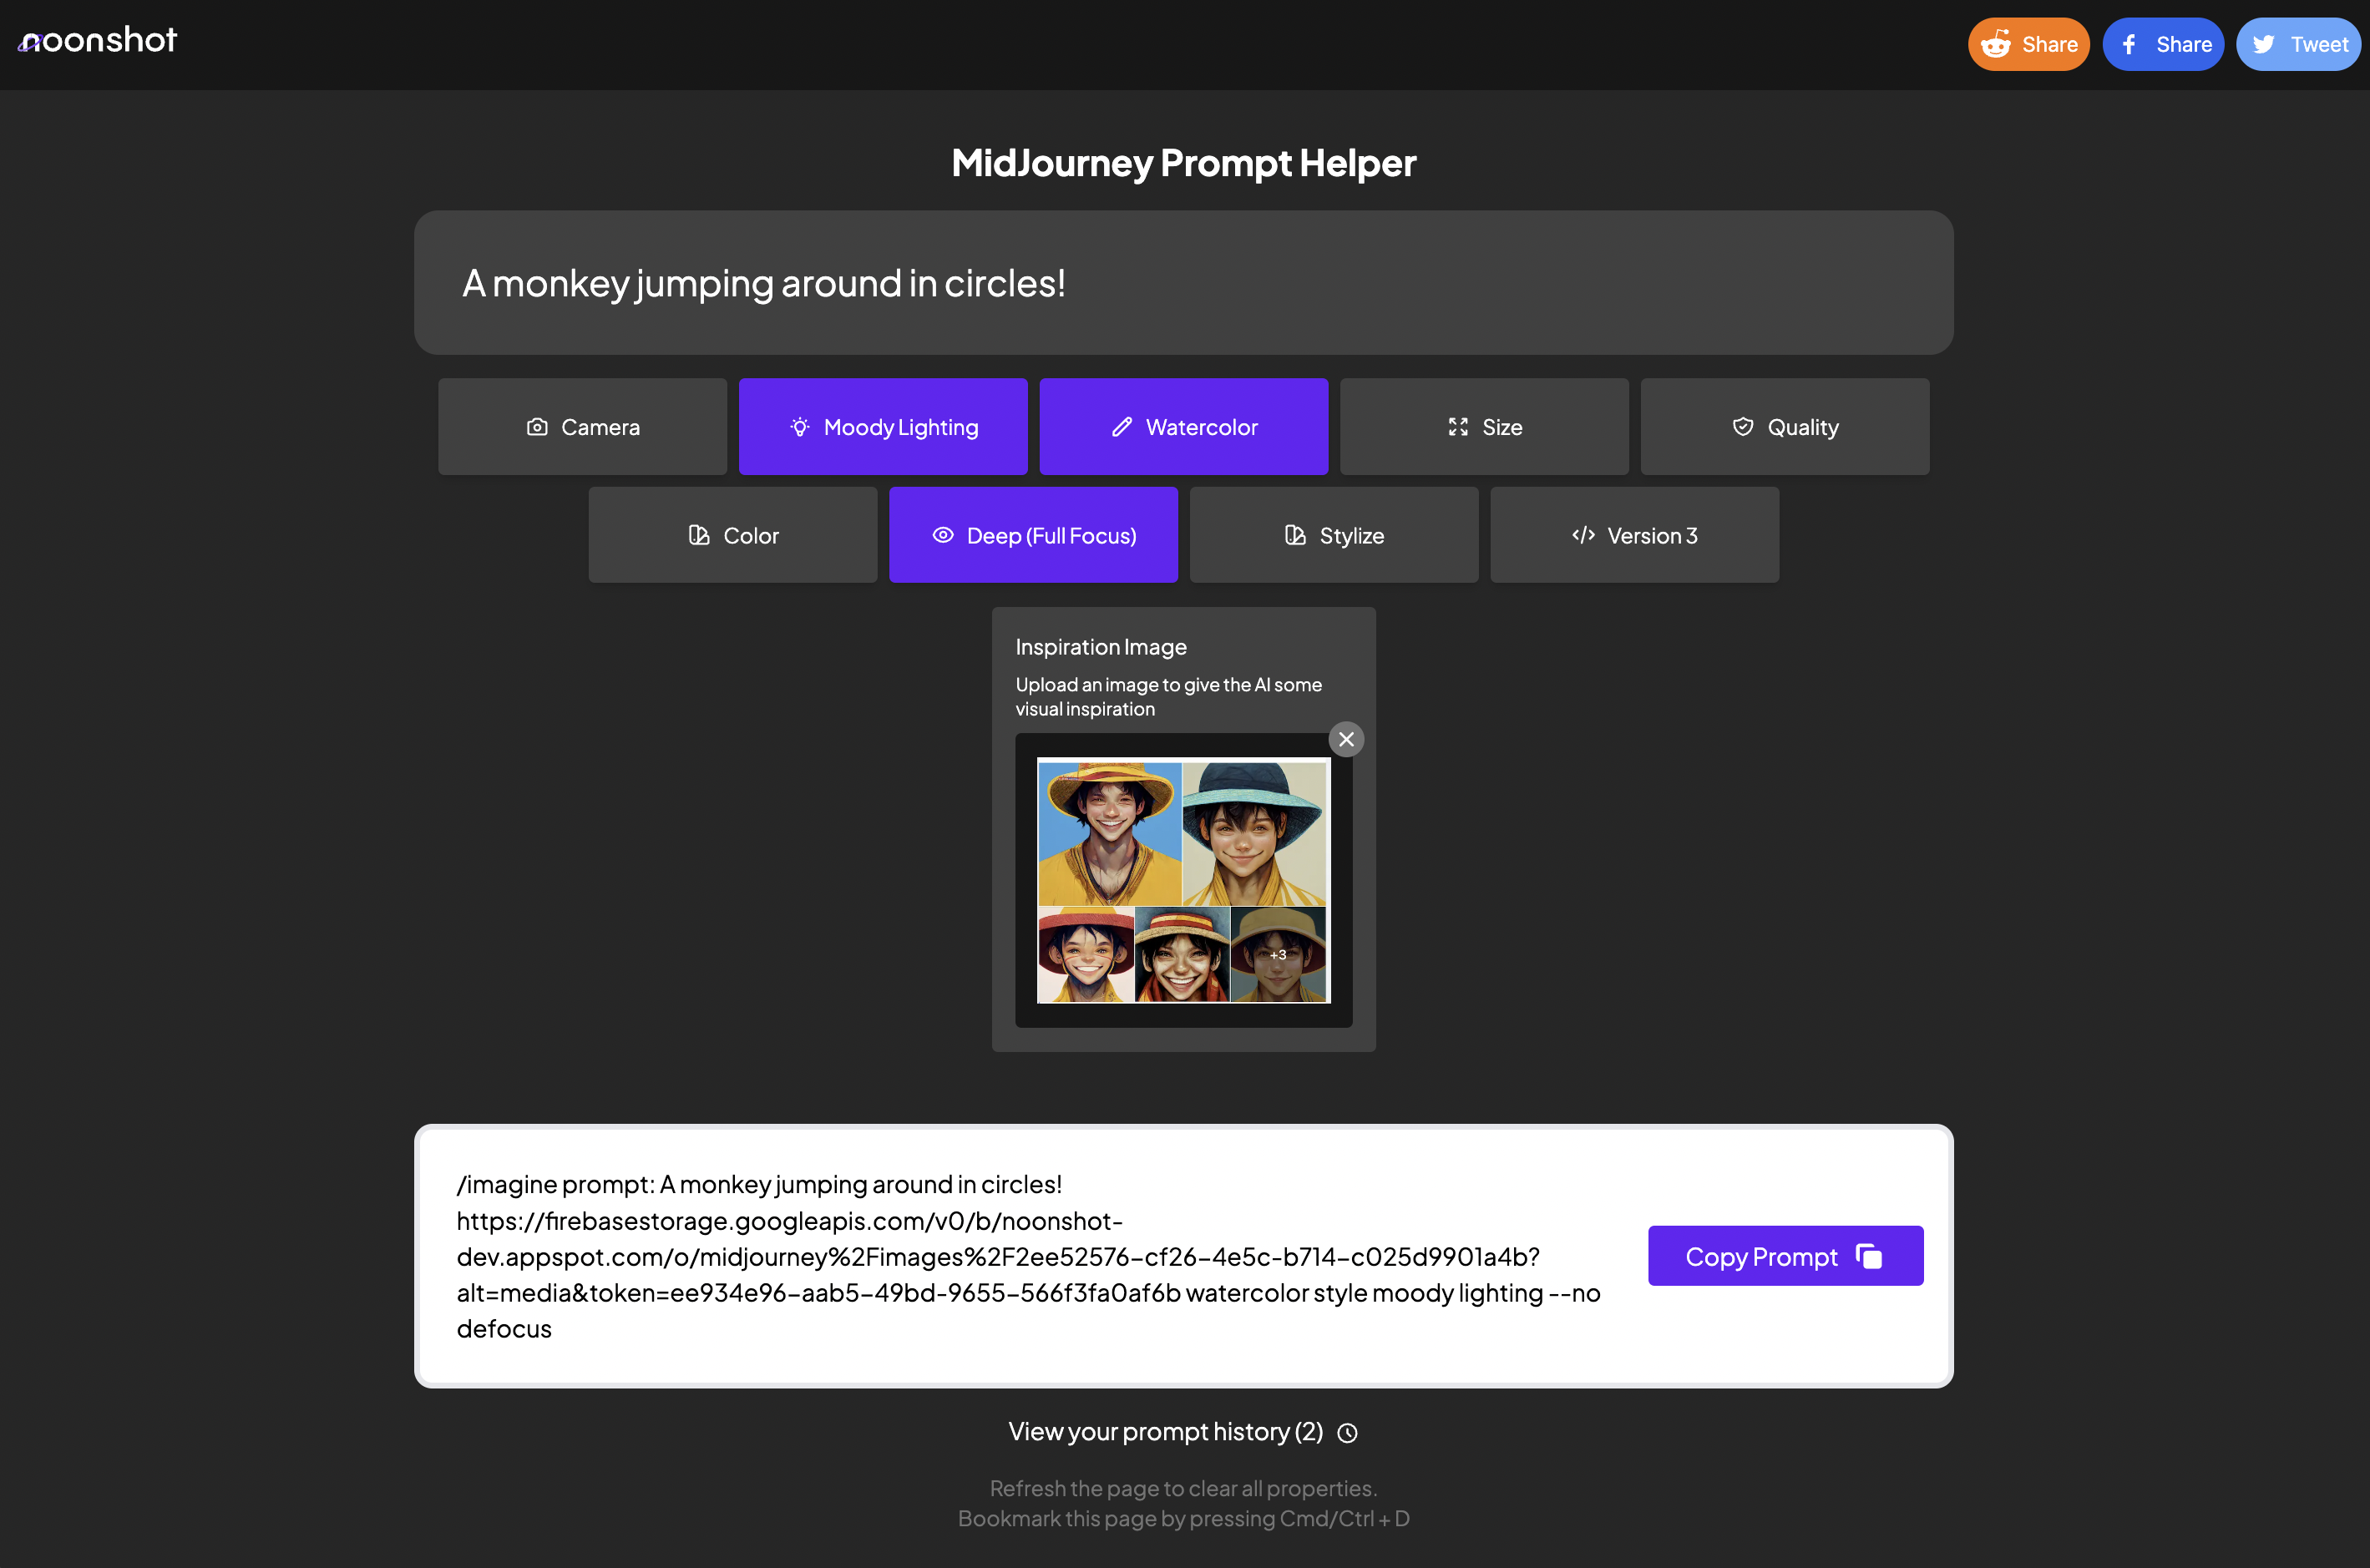 Midjourney Quict Tool - помогает пользователям генерировать творческие подсказки, предоставляя им идеи, предложения и вдохновение